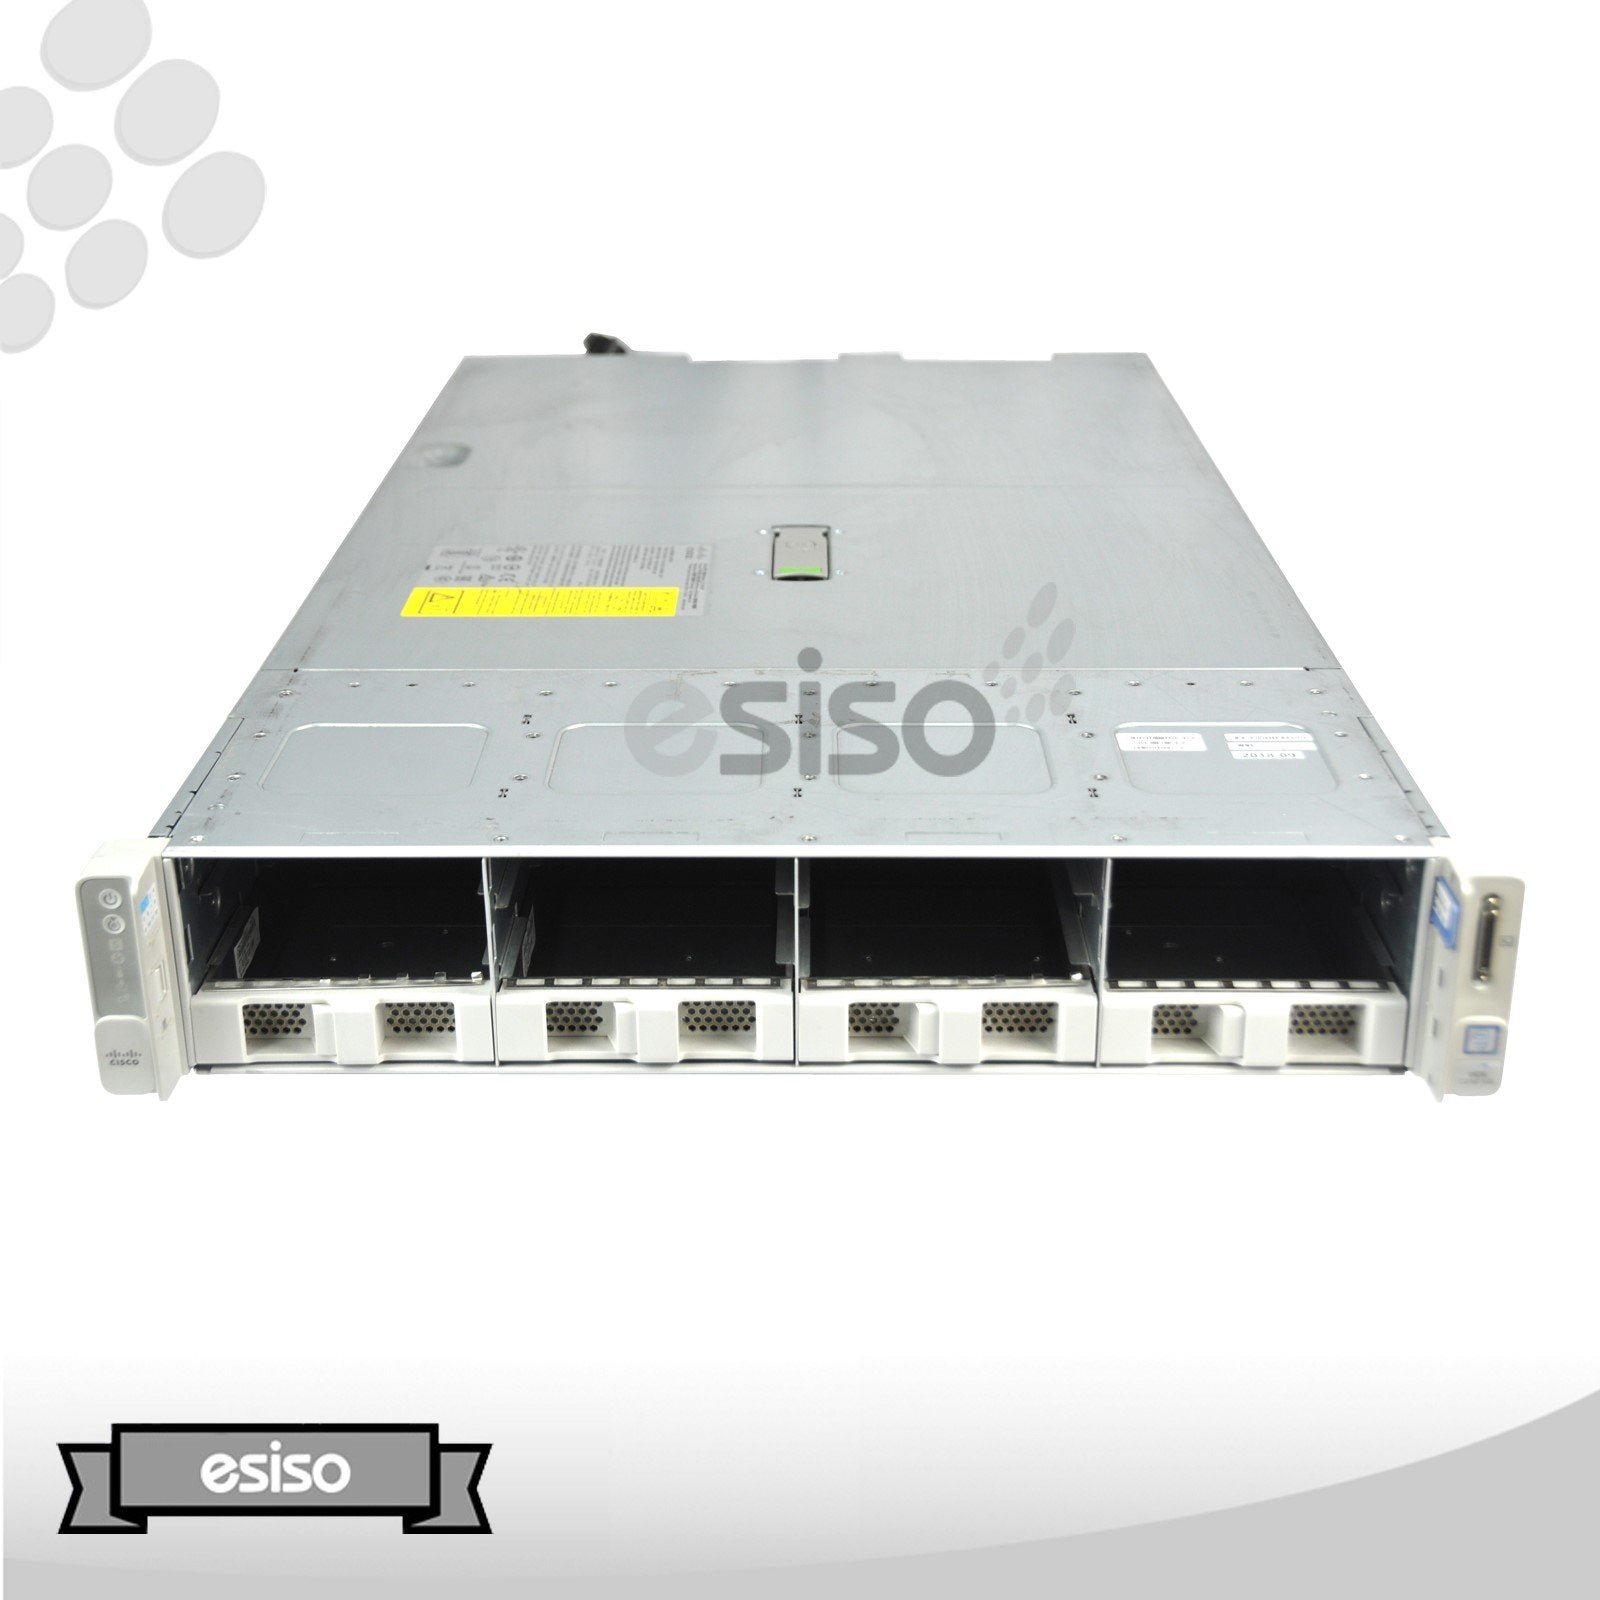 CISCO UCS C240 M5 12LFF + 2SFF 2U SERVER 2x 8C 6134 3.2GHz 128GB RAM 2x 120GB SSD